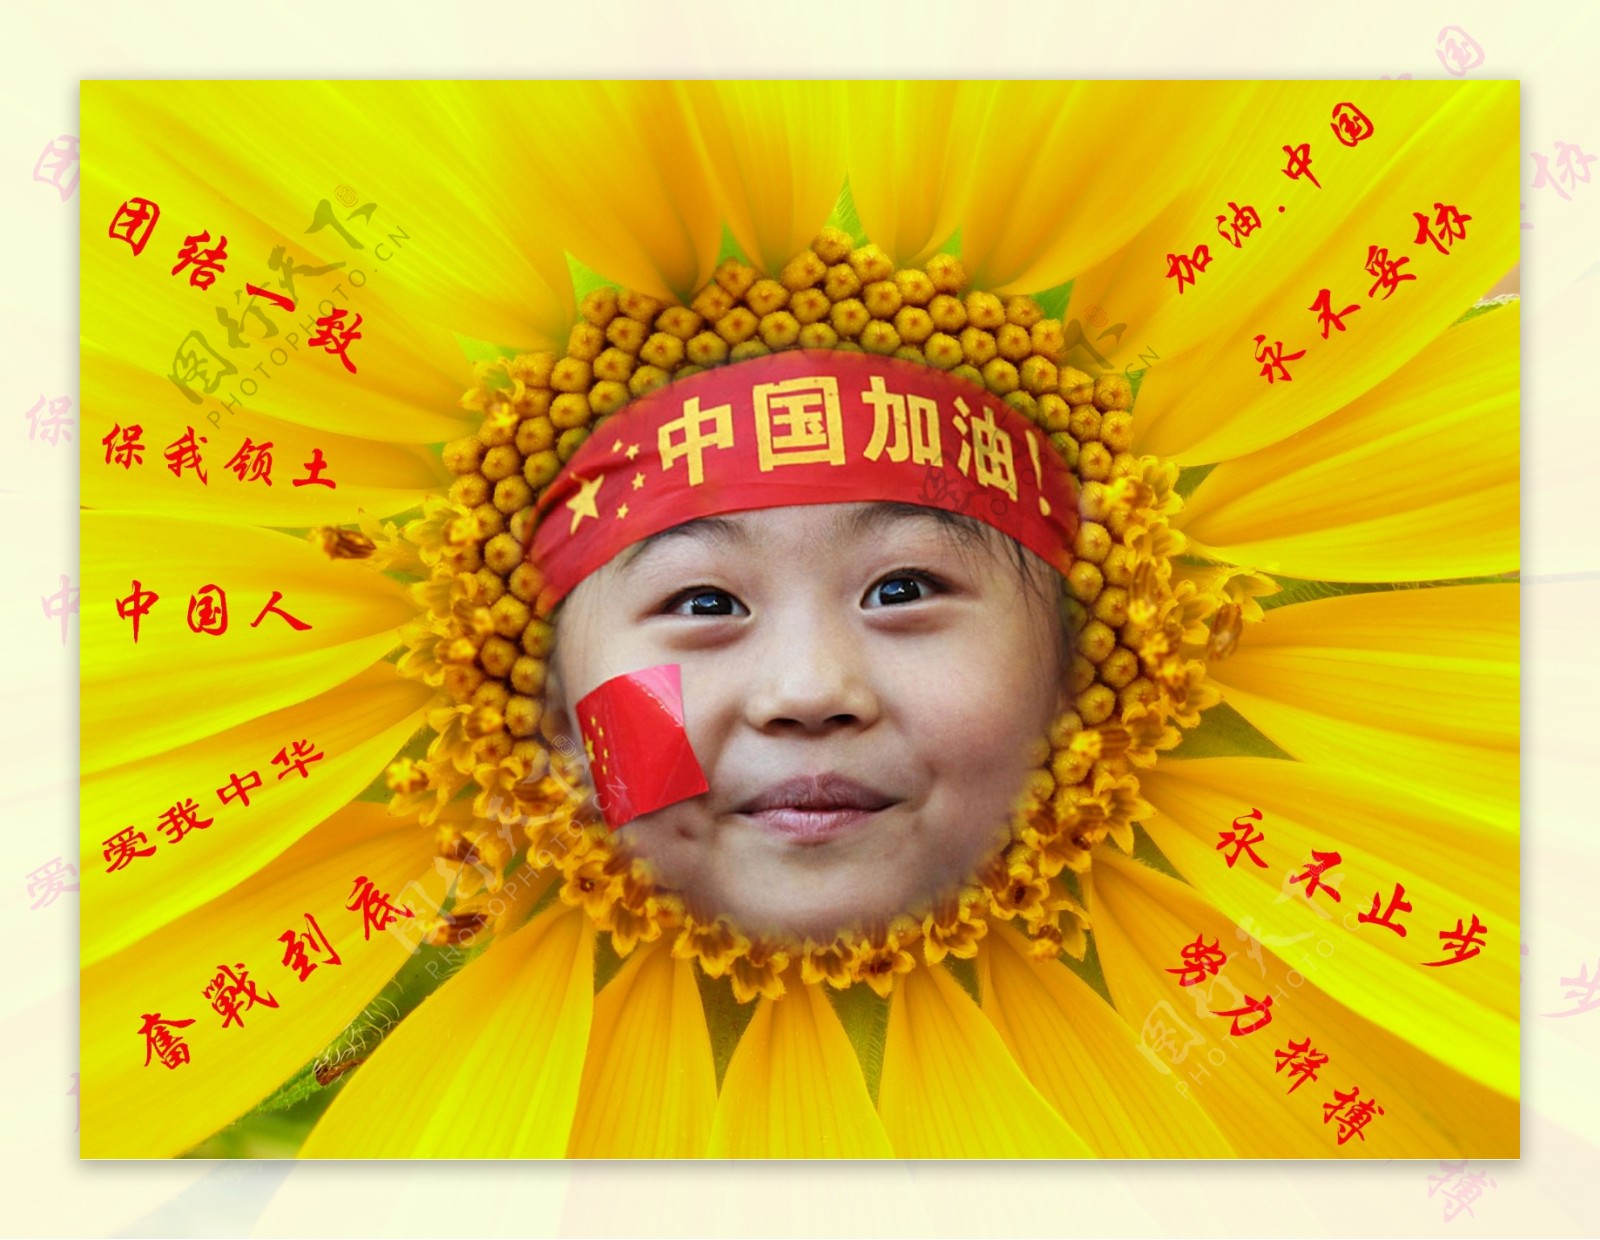 中国加油葵花图片